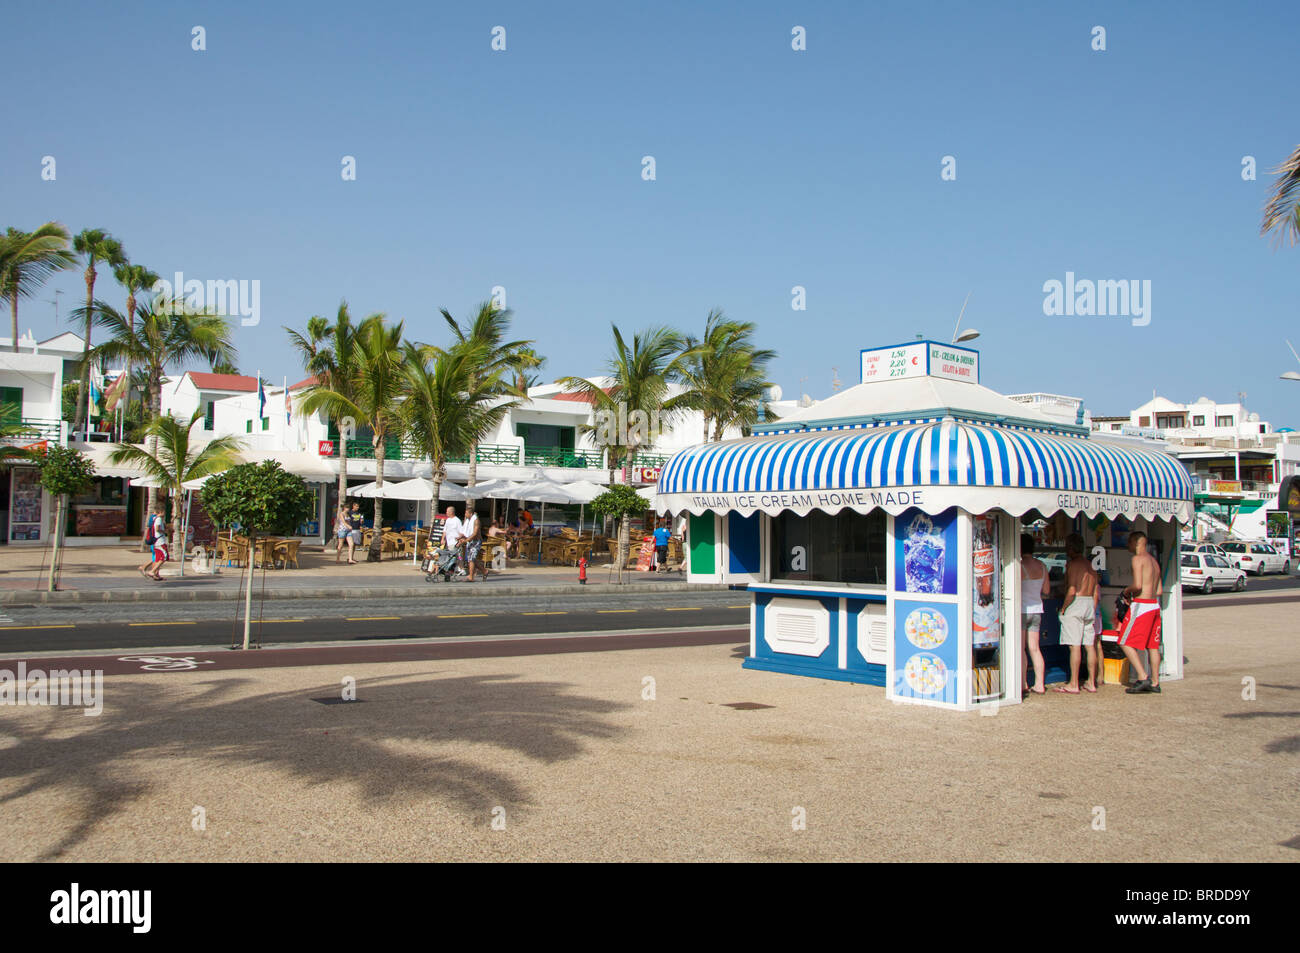 Un kiosque de Icecream par la plage de Puerto Del Carmen, Lanzarote, îles Canaries. Banque D'Images